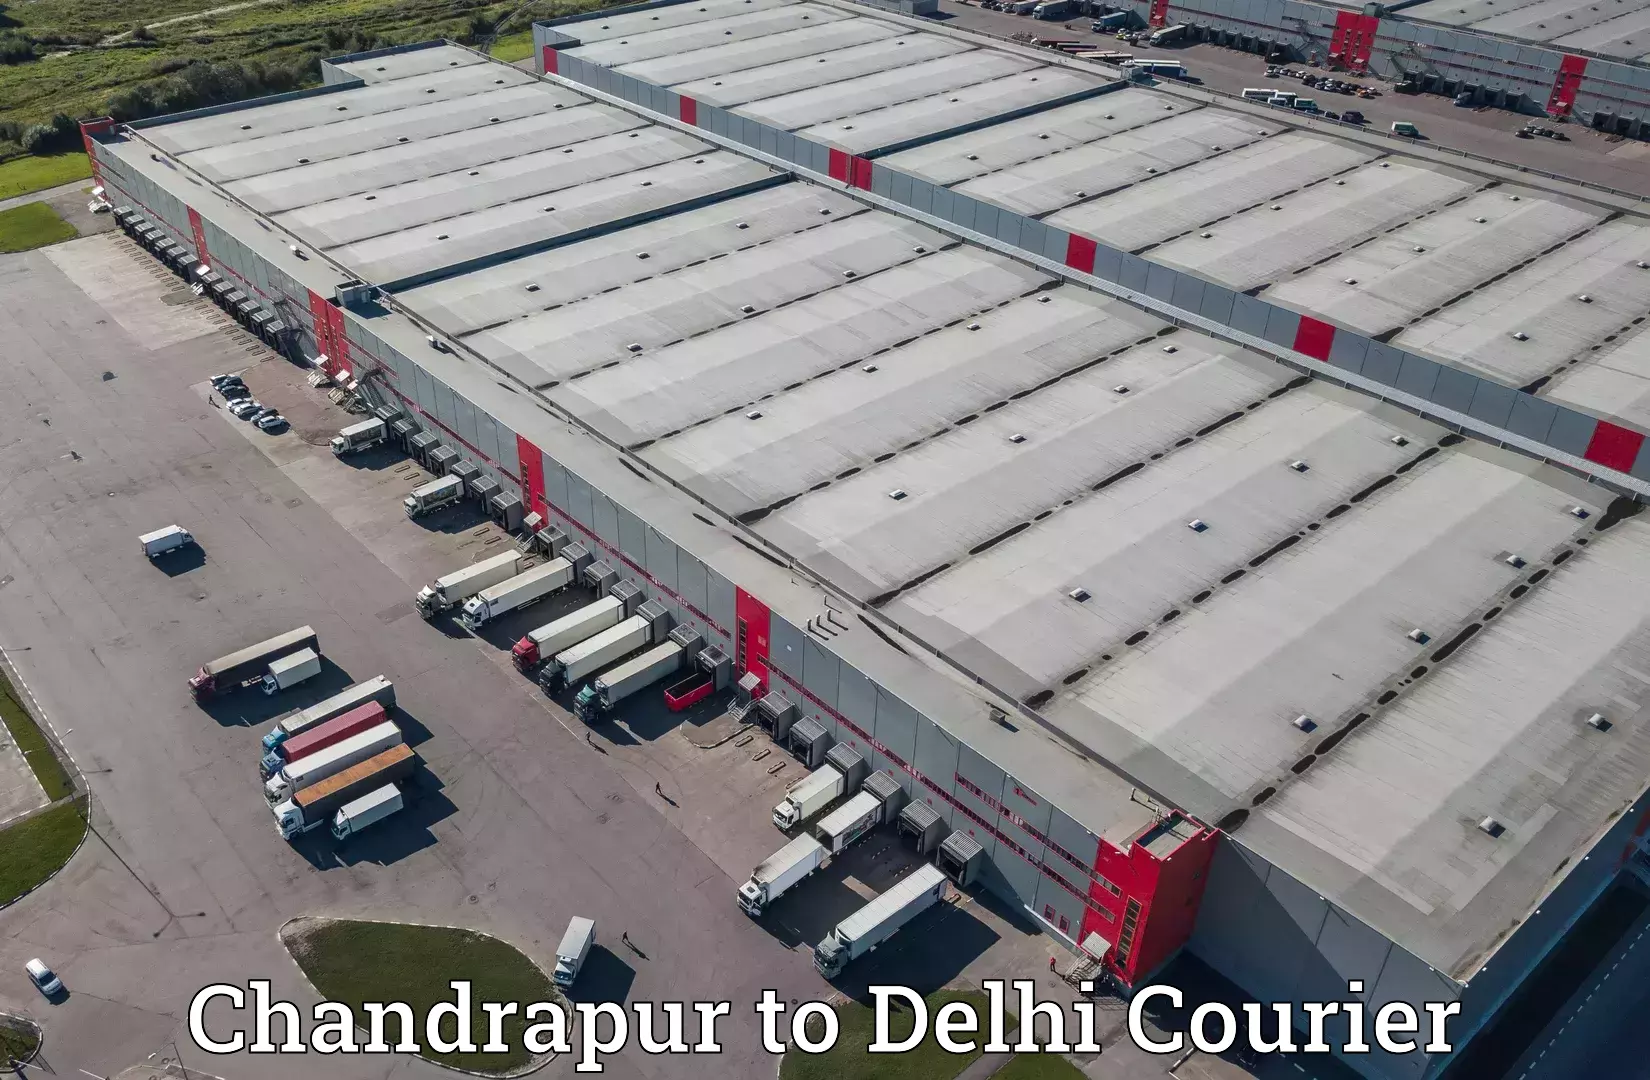 Efficient parcel service Chandrapur to University of Delhi